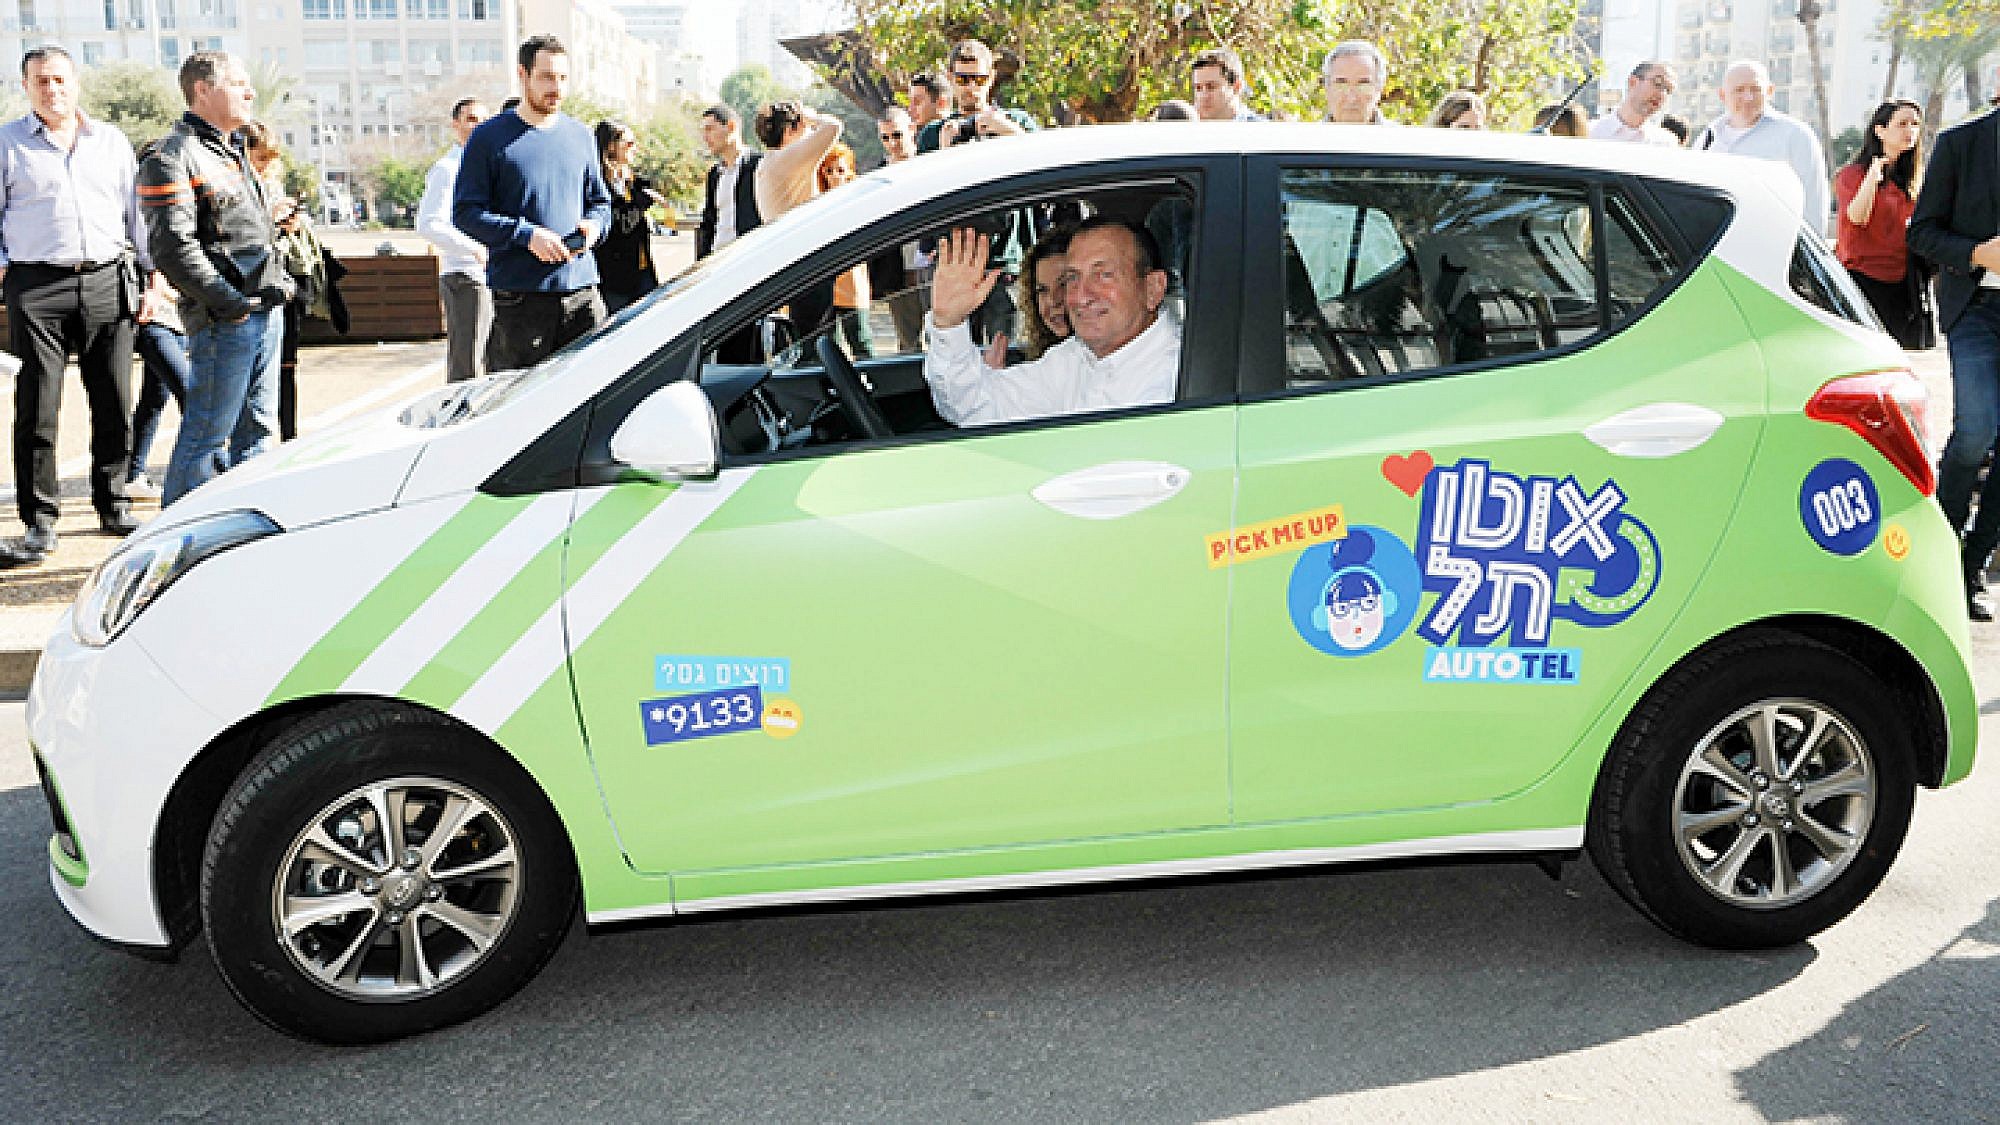 ראש העיר רון חולדאי במכונית אוטותל (צילום: כפיר סיון)